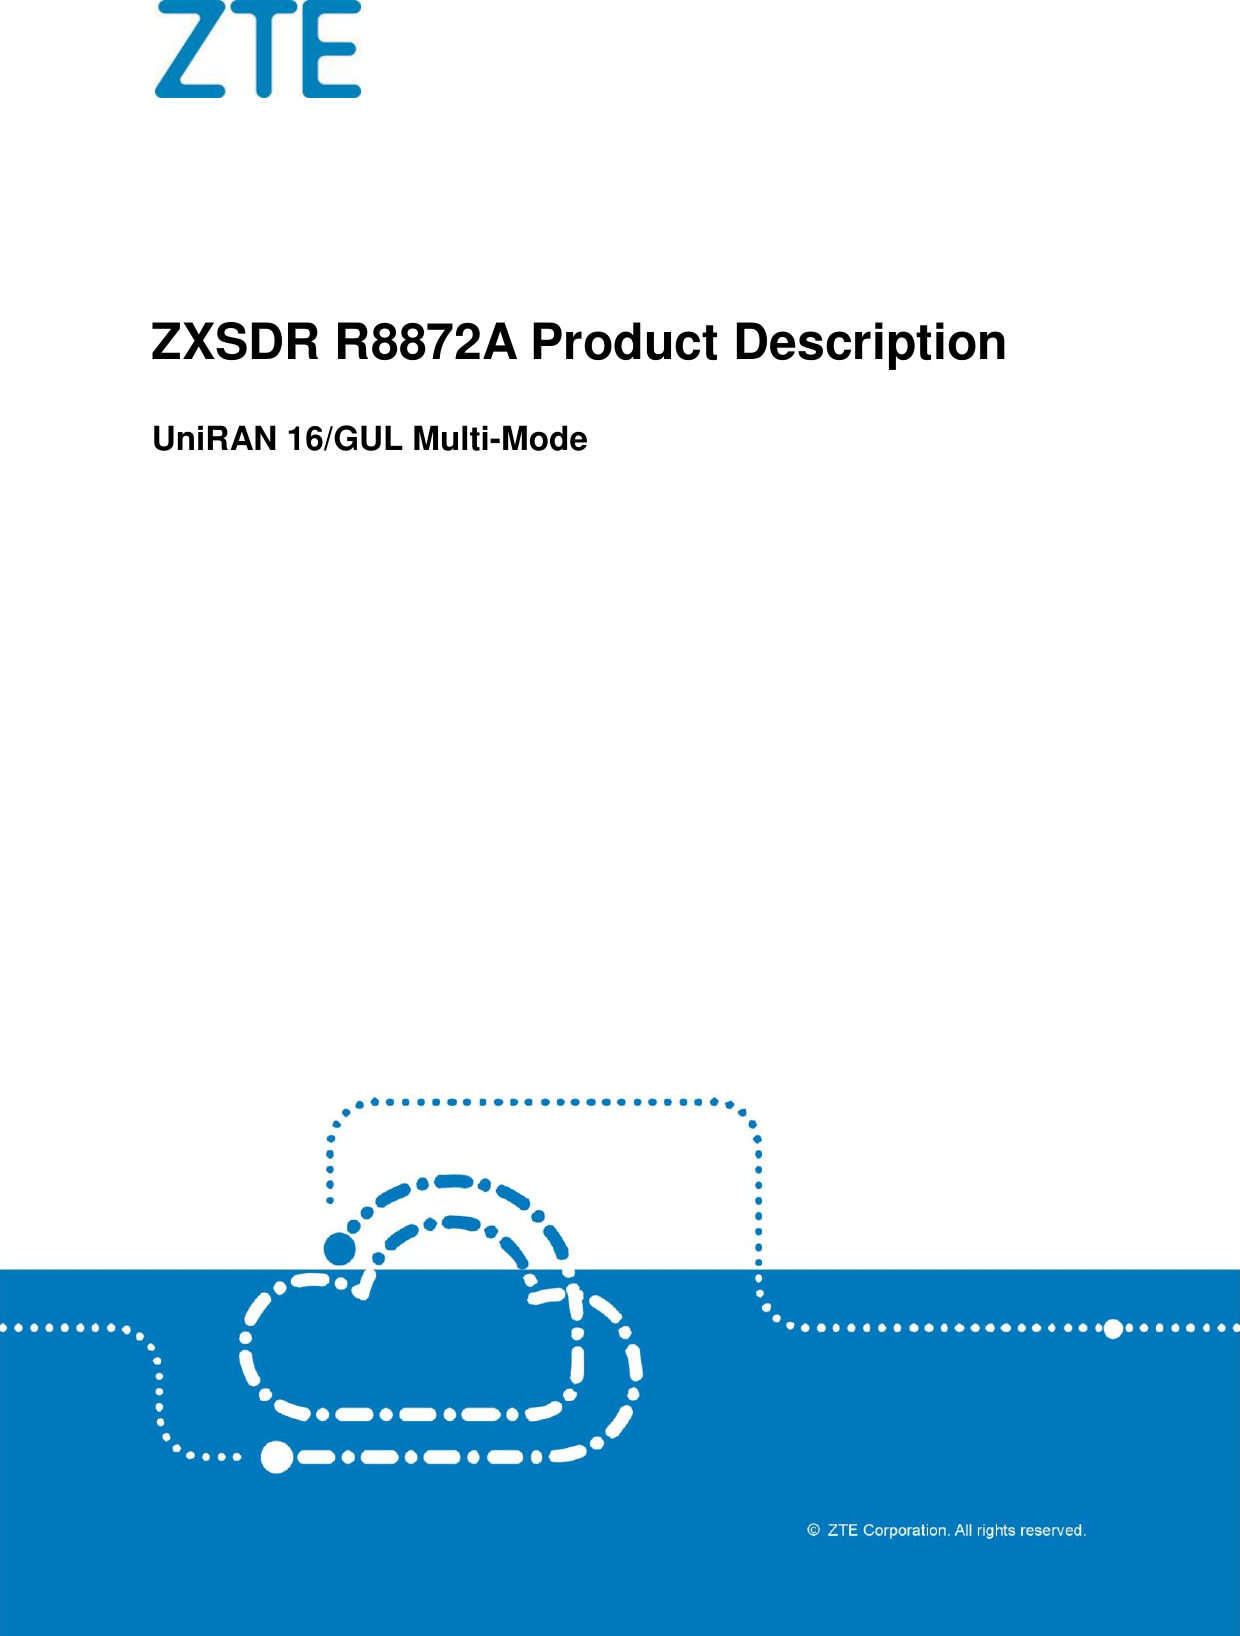    ZXSDR R8872A Product Description UniRAN 16/GUL Multi-Mode  